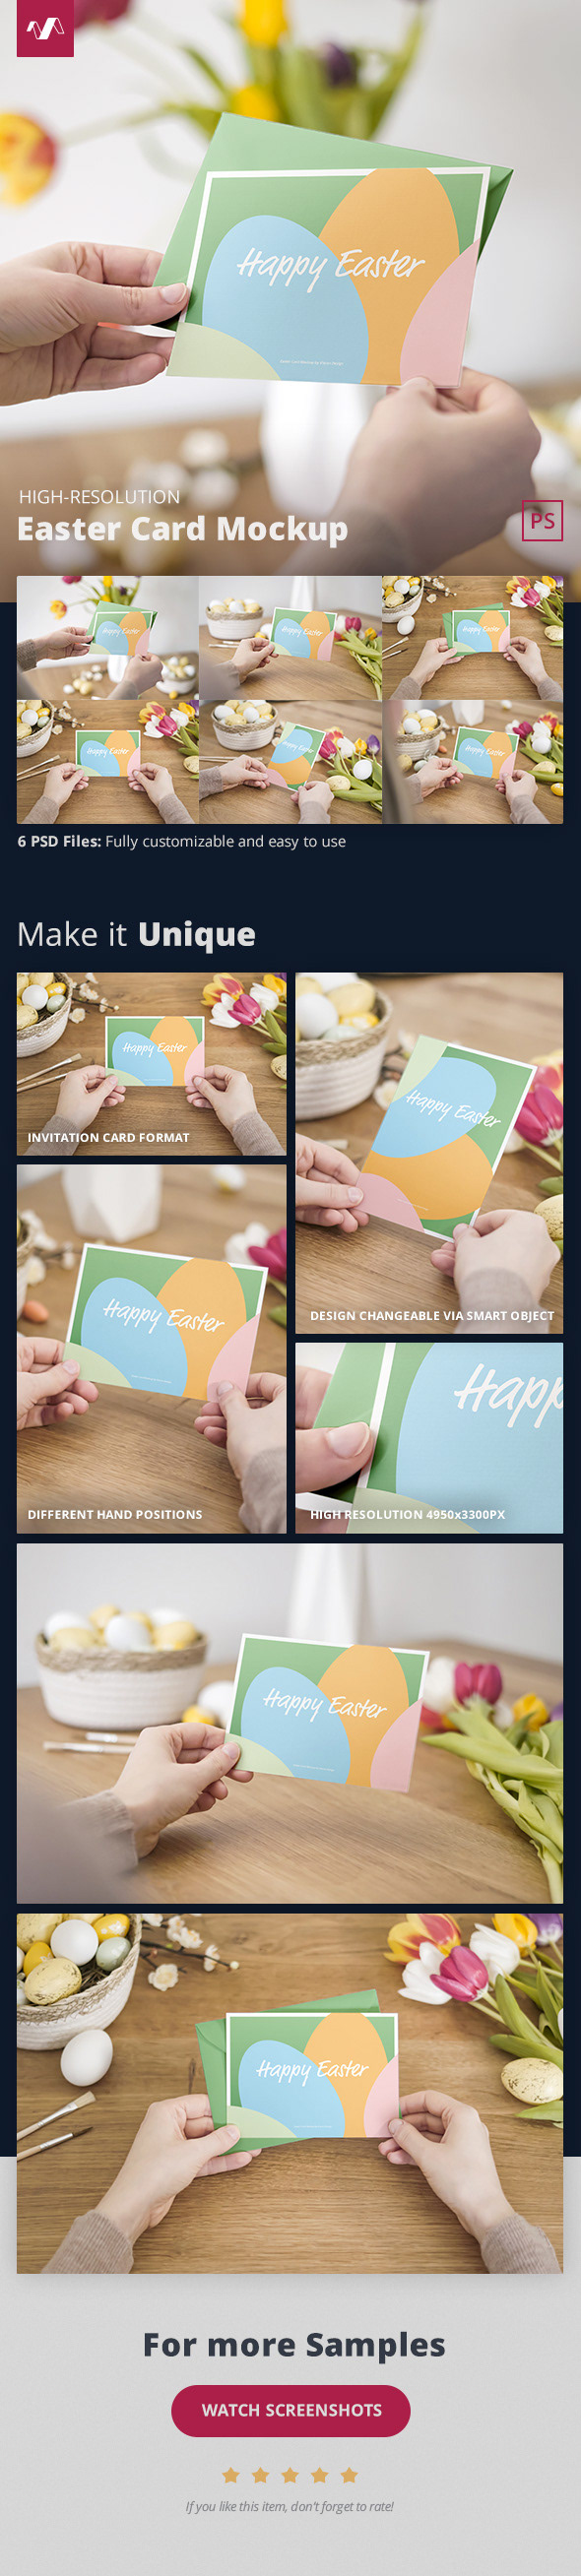 Bi-fold card card design card mockup decoration decorative Easter Easter Egg eggs envelope